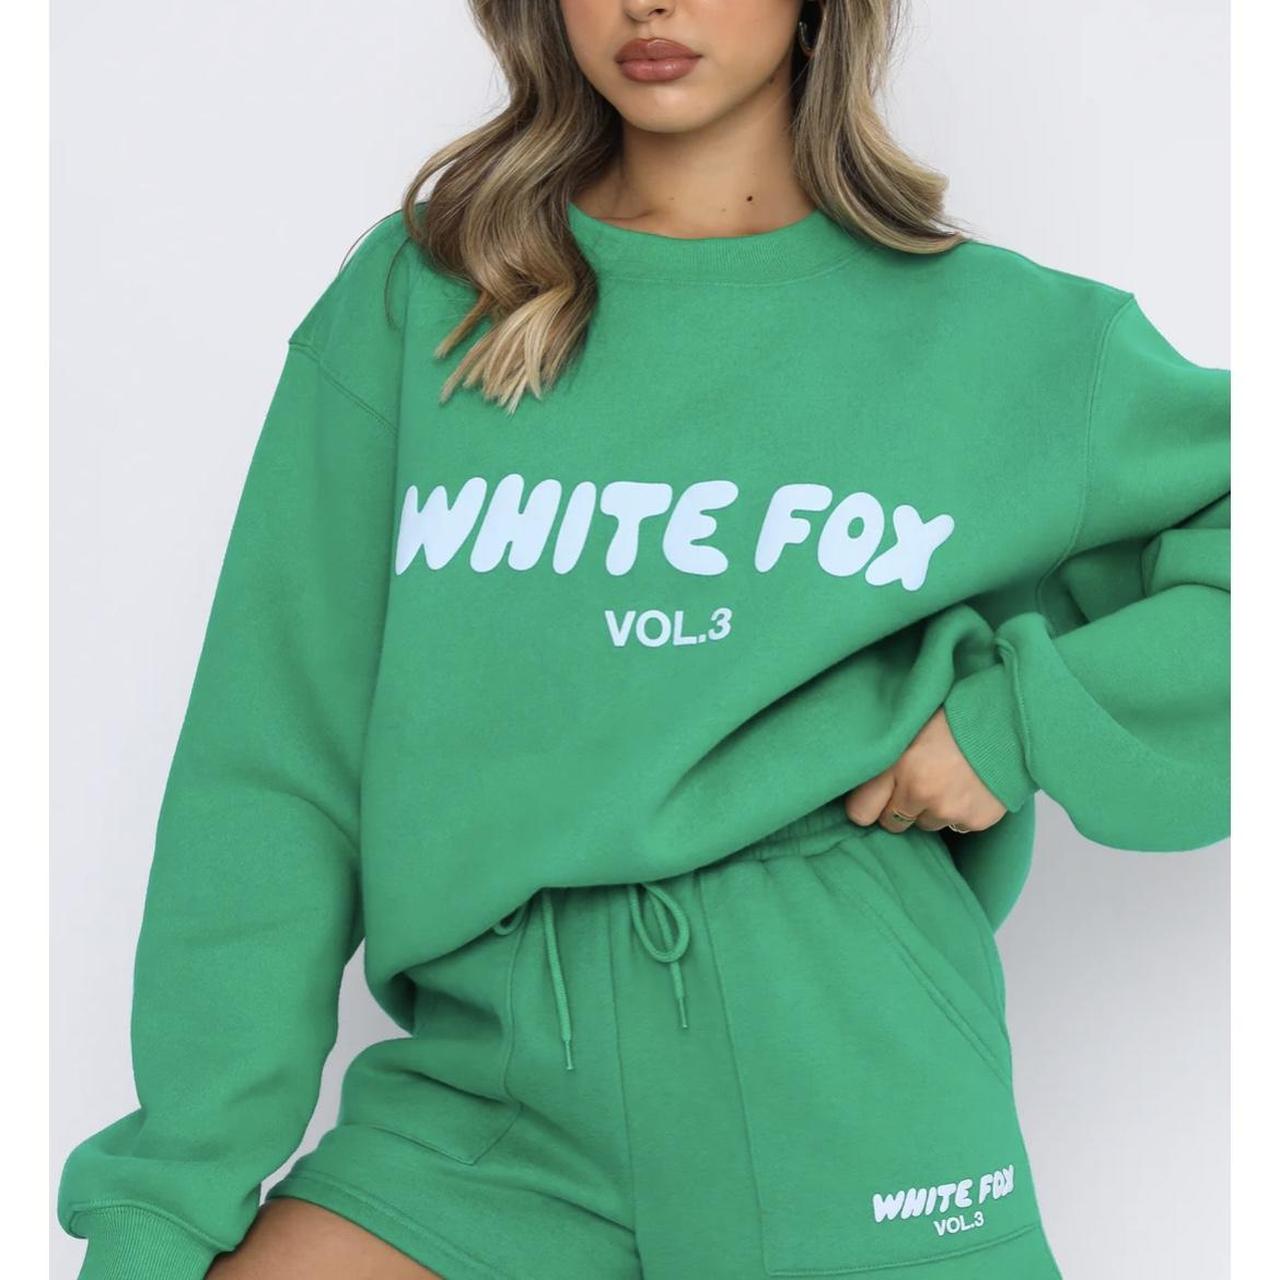 White fox - offstage sweater Amazon Green - jumper... - Depop